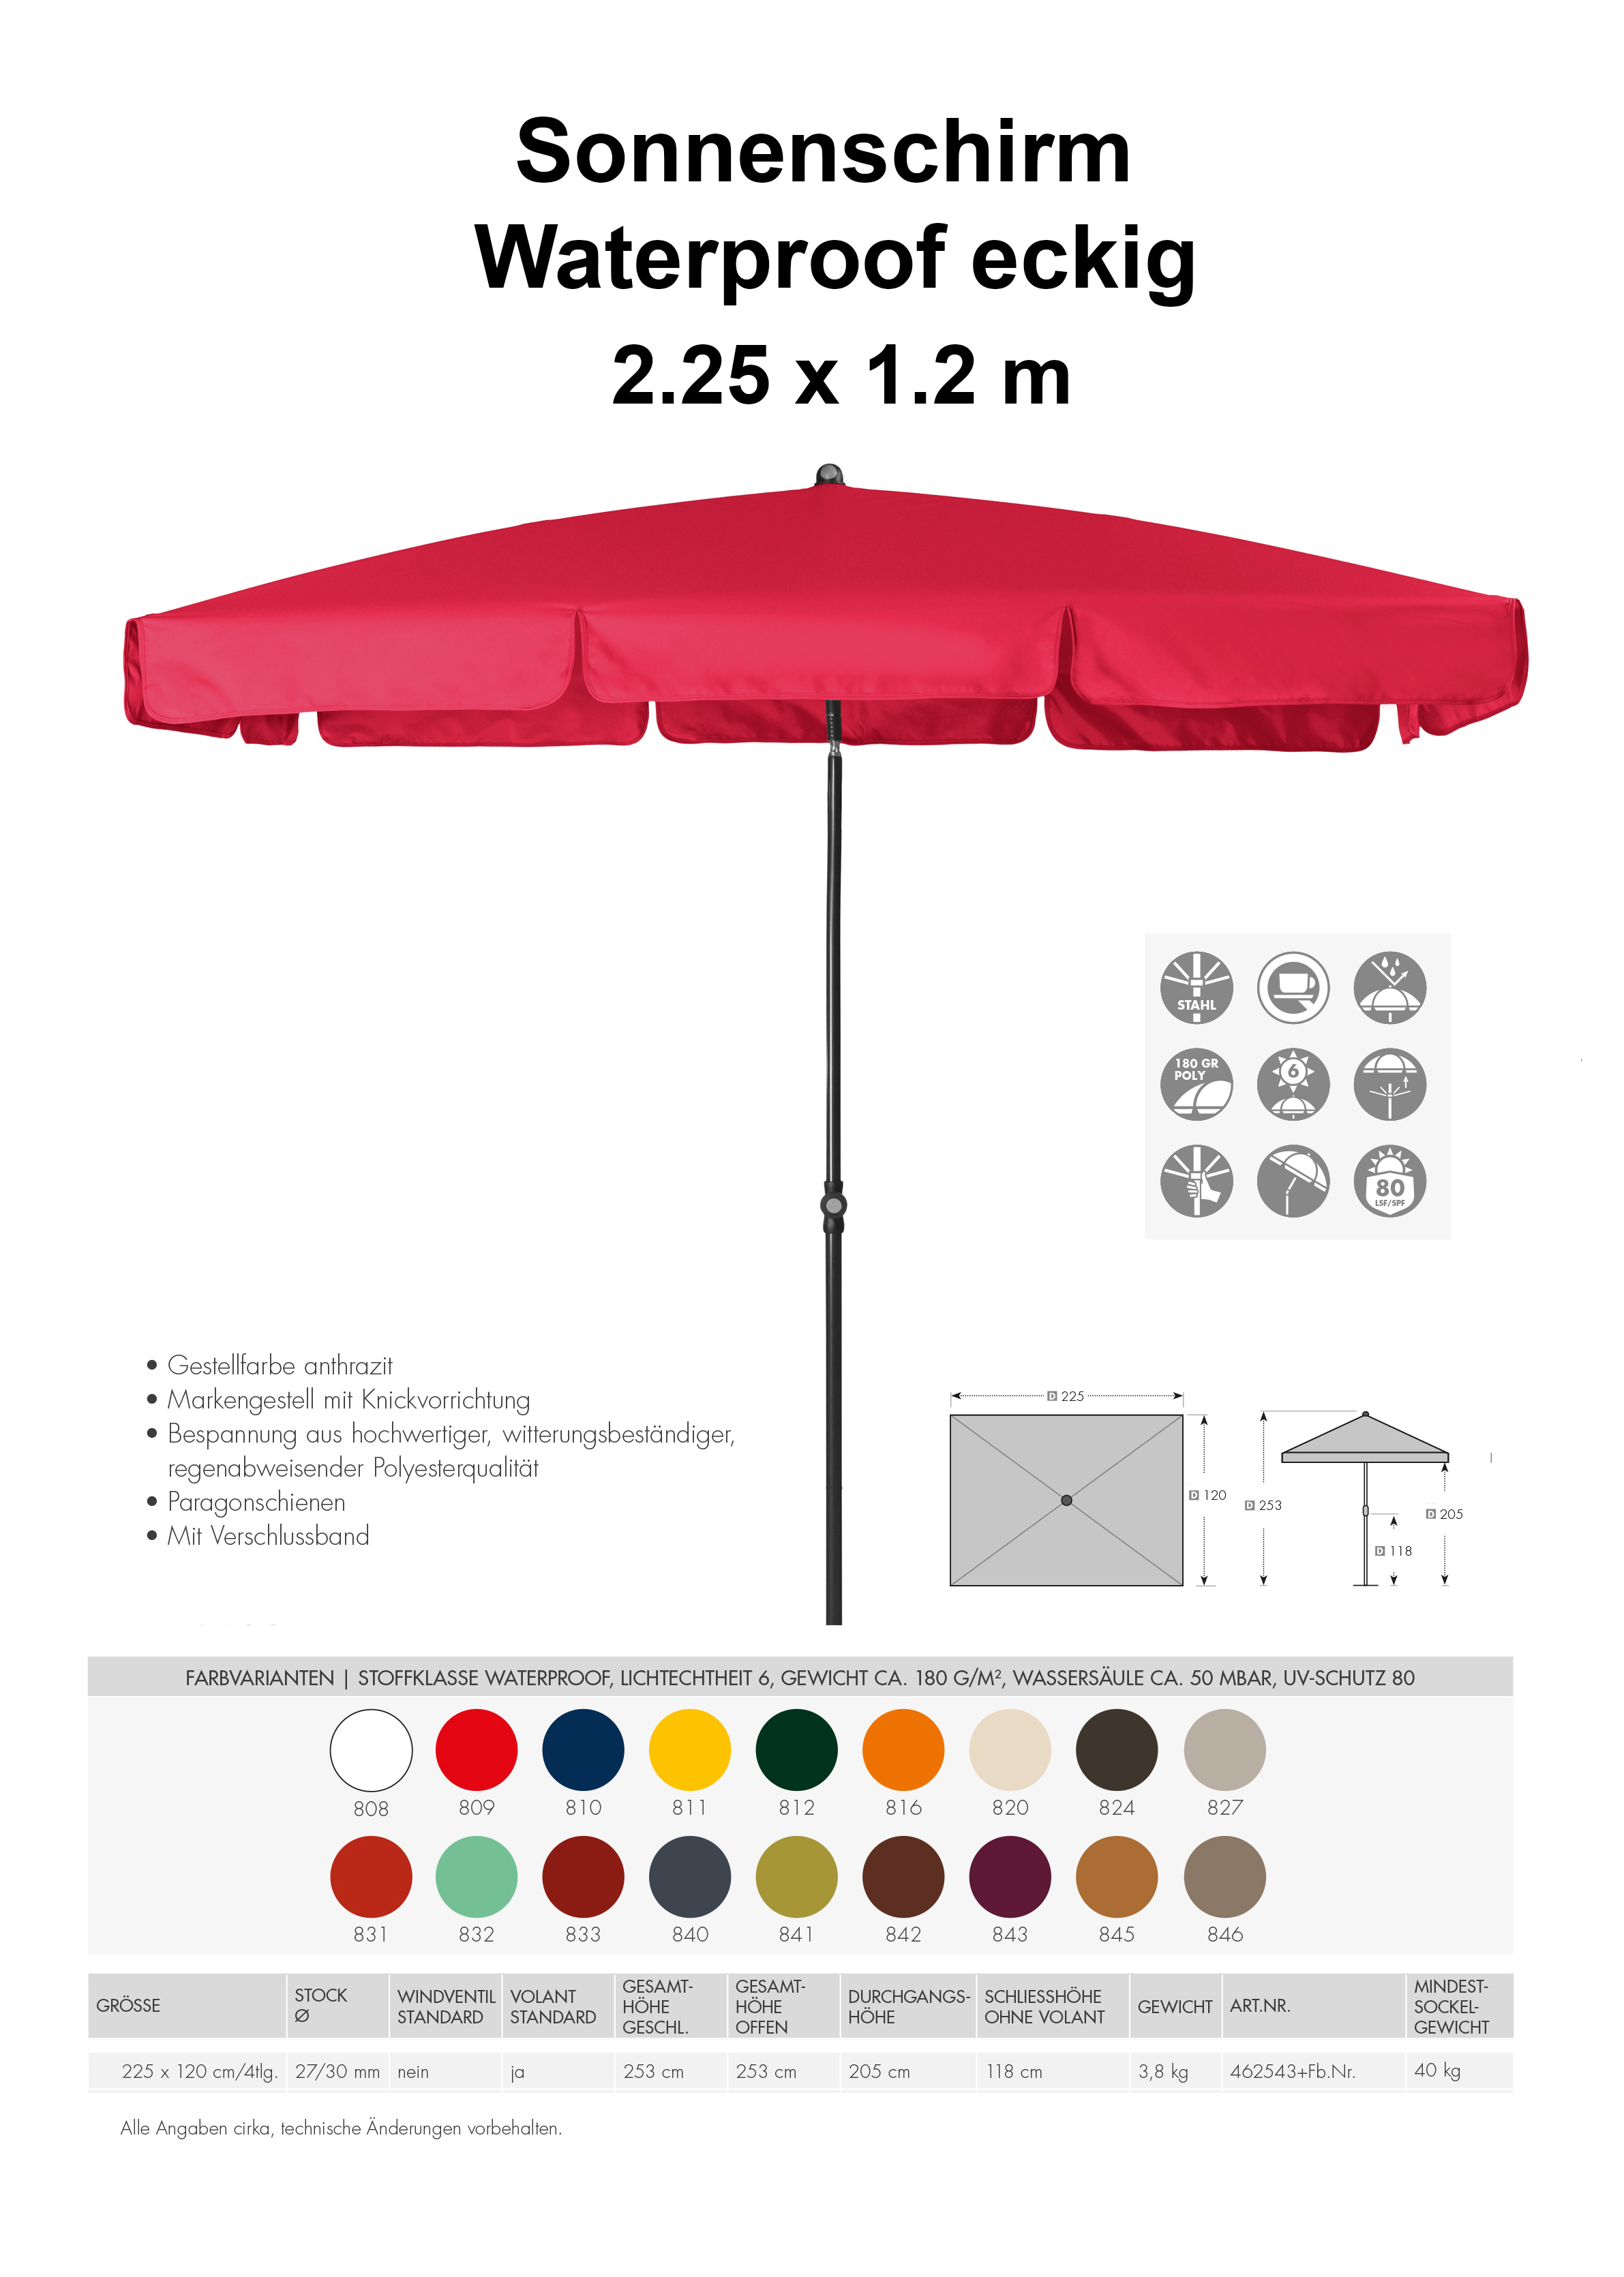 Sonnenschirm Waterproof eckig 225 x 120 cm